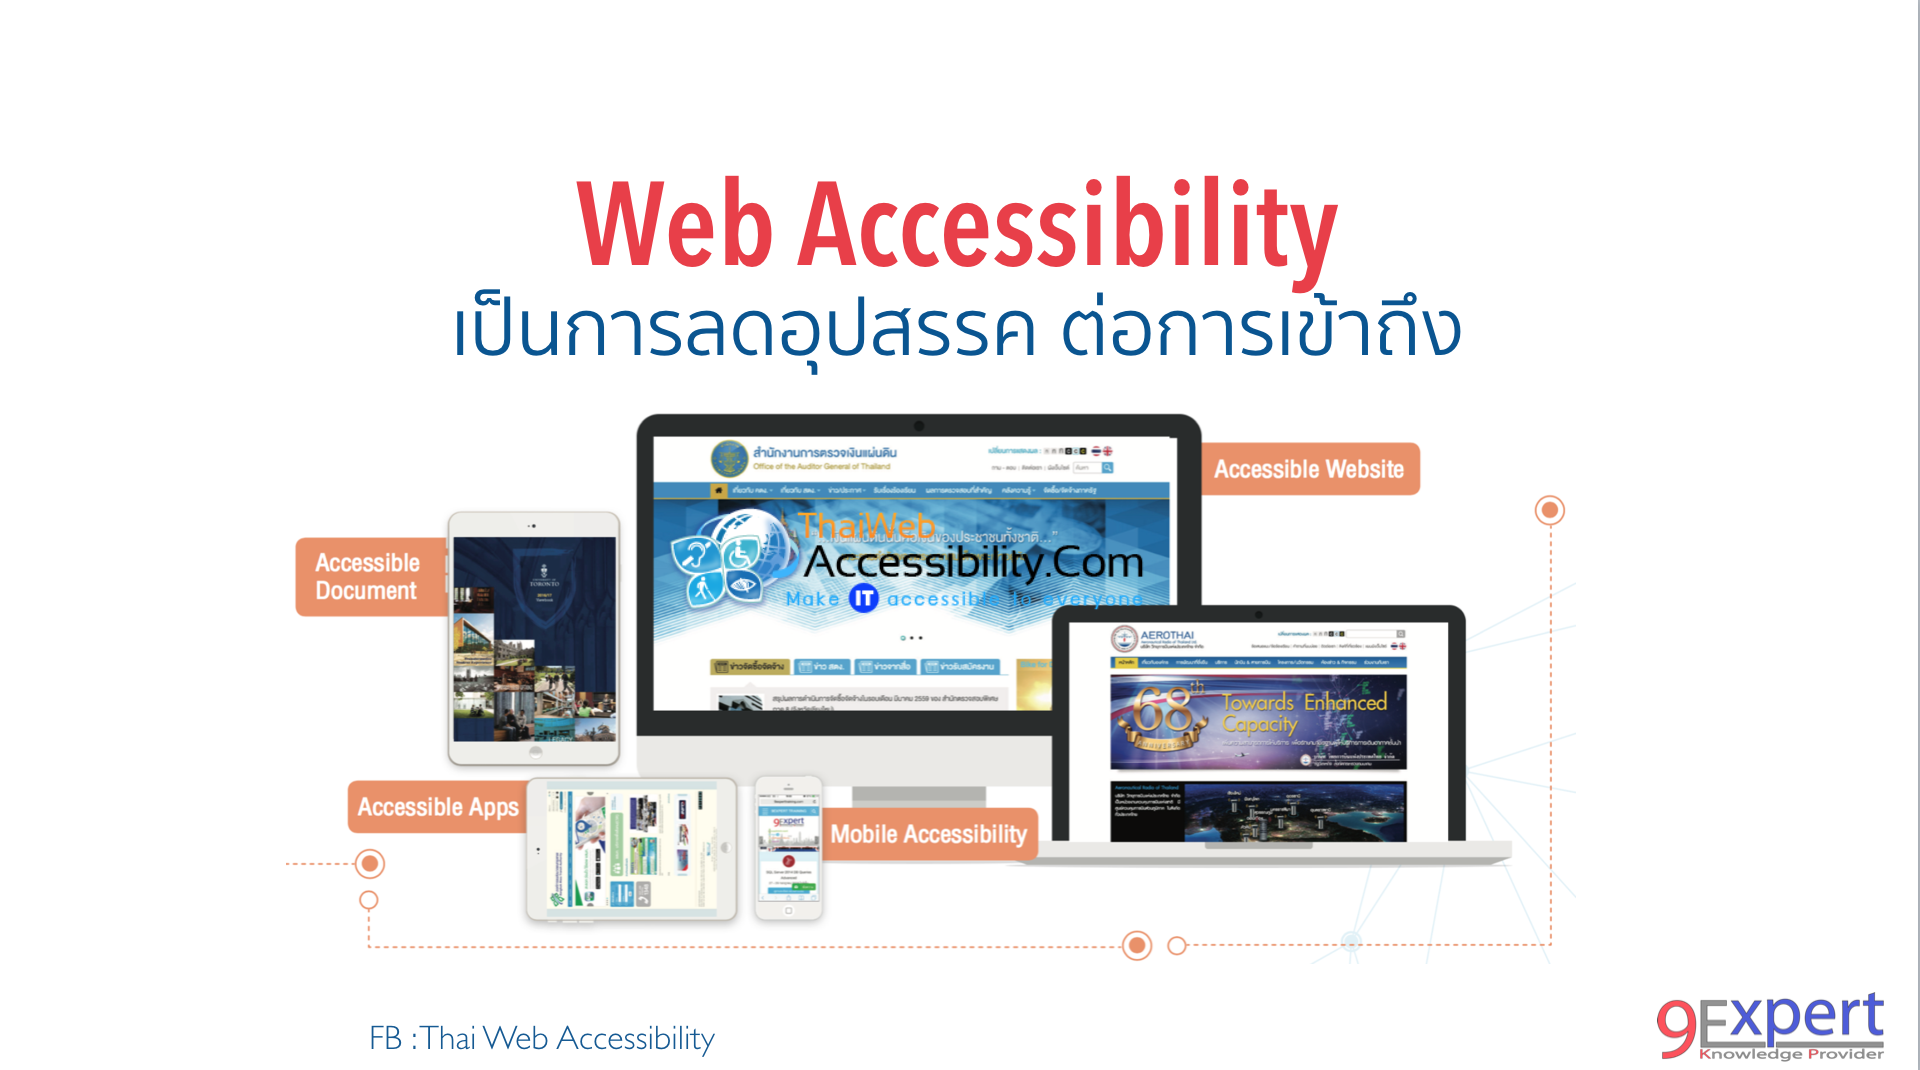 Web Accessibility เป็นการลดอุปสรรค ต่อการเข้าถึง 